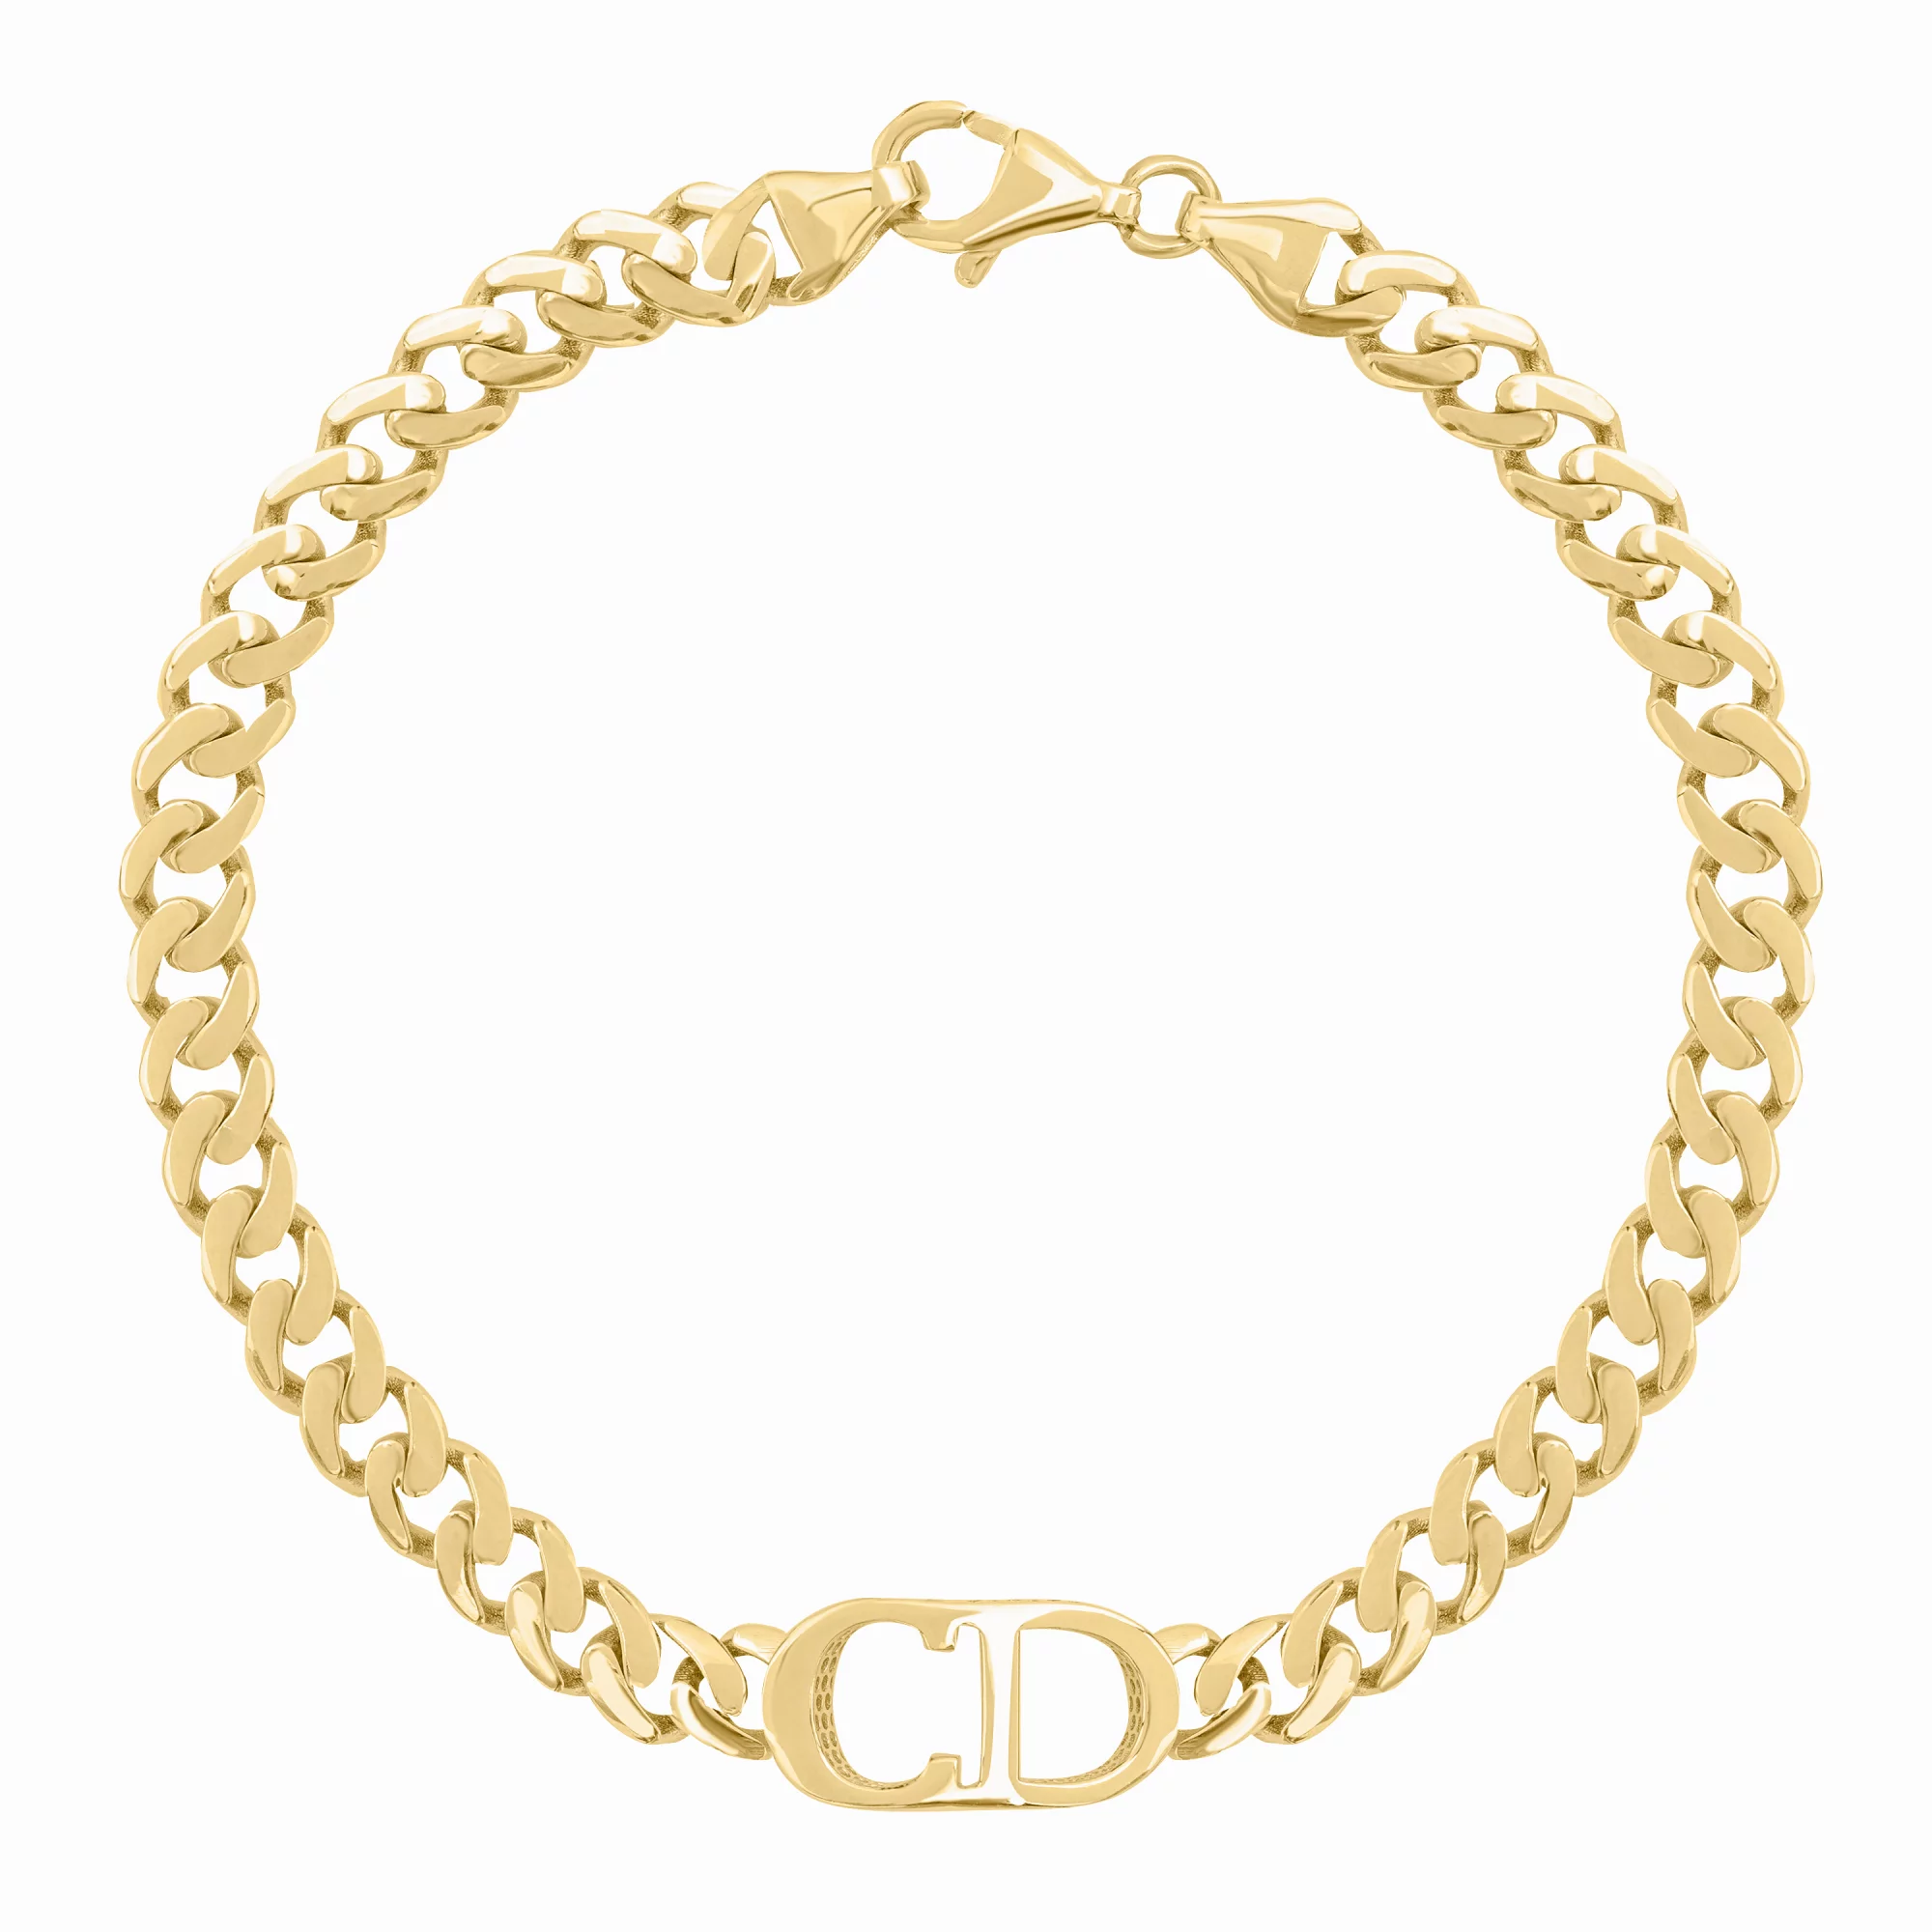 Браслет "CD" в желтом золоте панцирное плетение - 1649843 – изображение 1